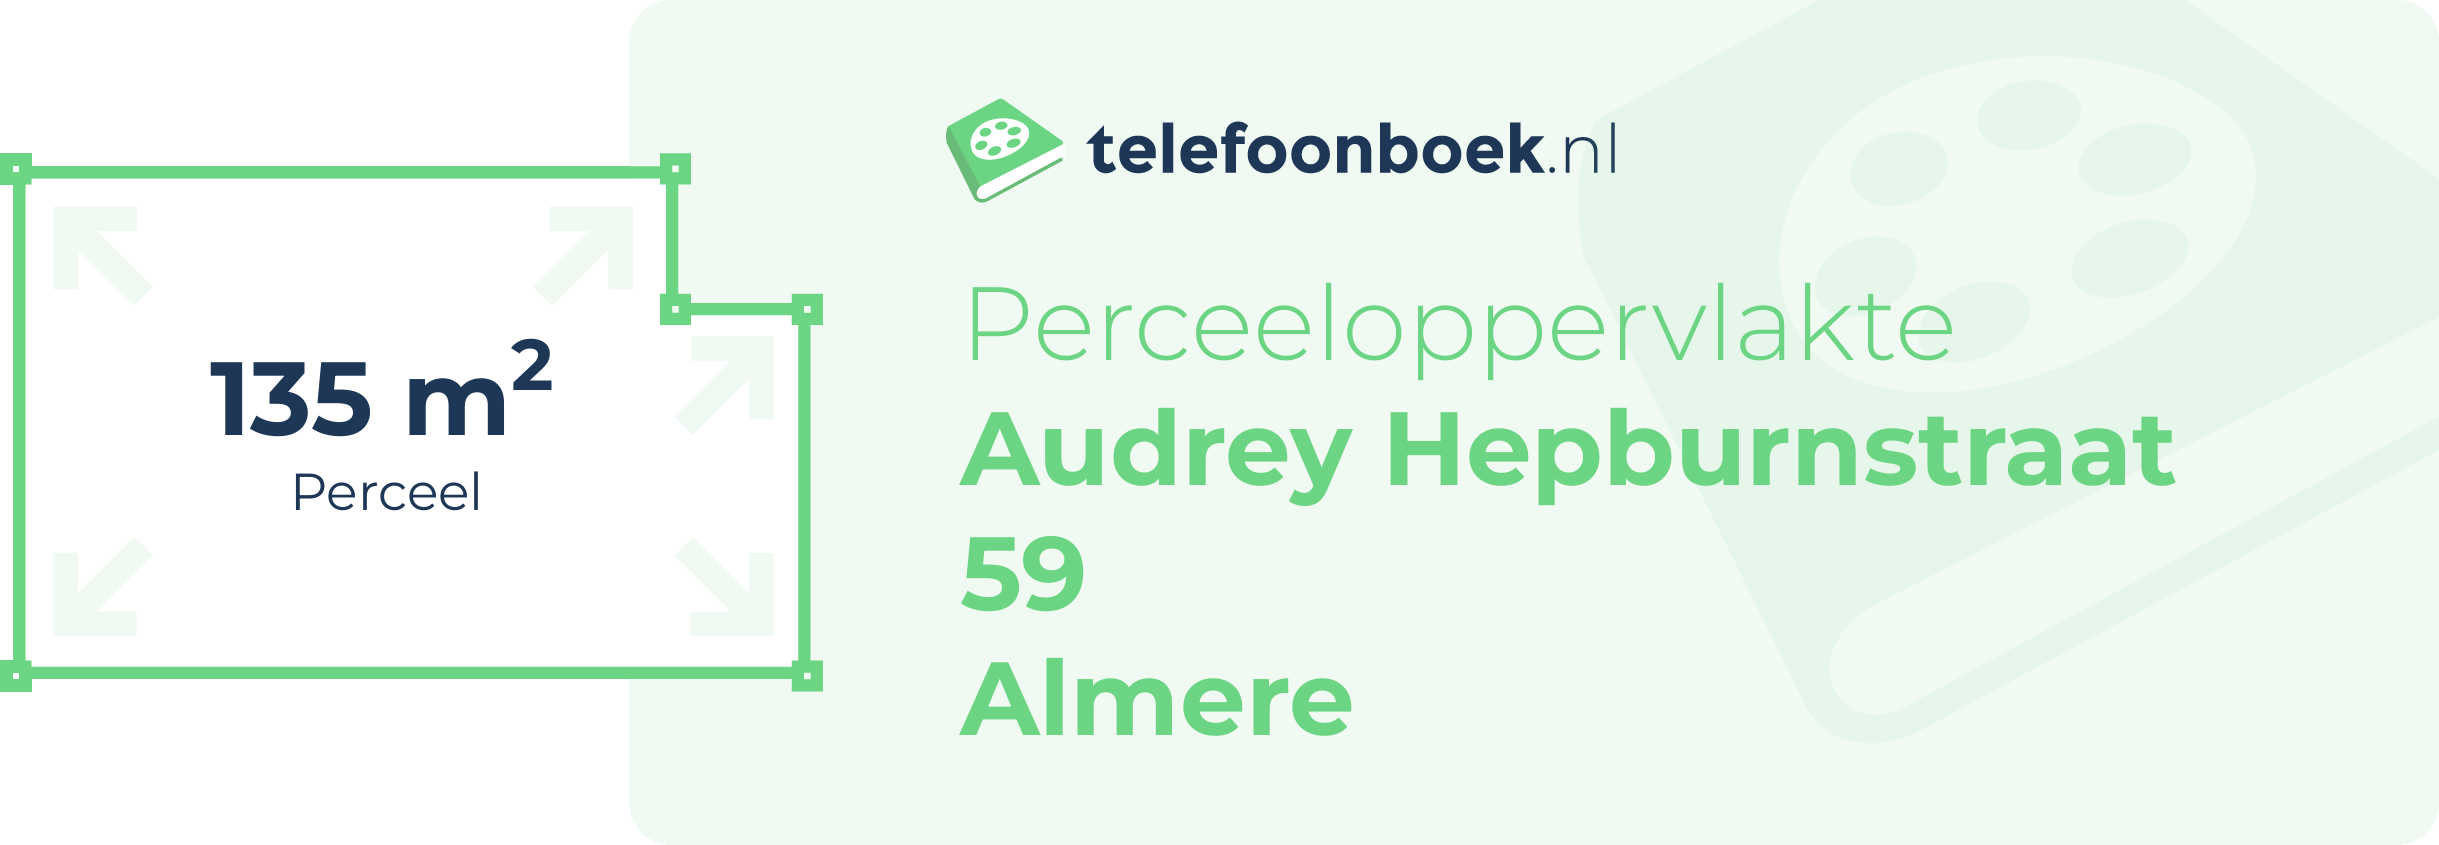 Perceeloppervlakte Audrey Hepburnstraat 59 Almere